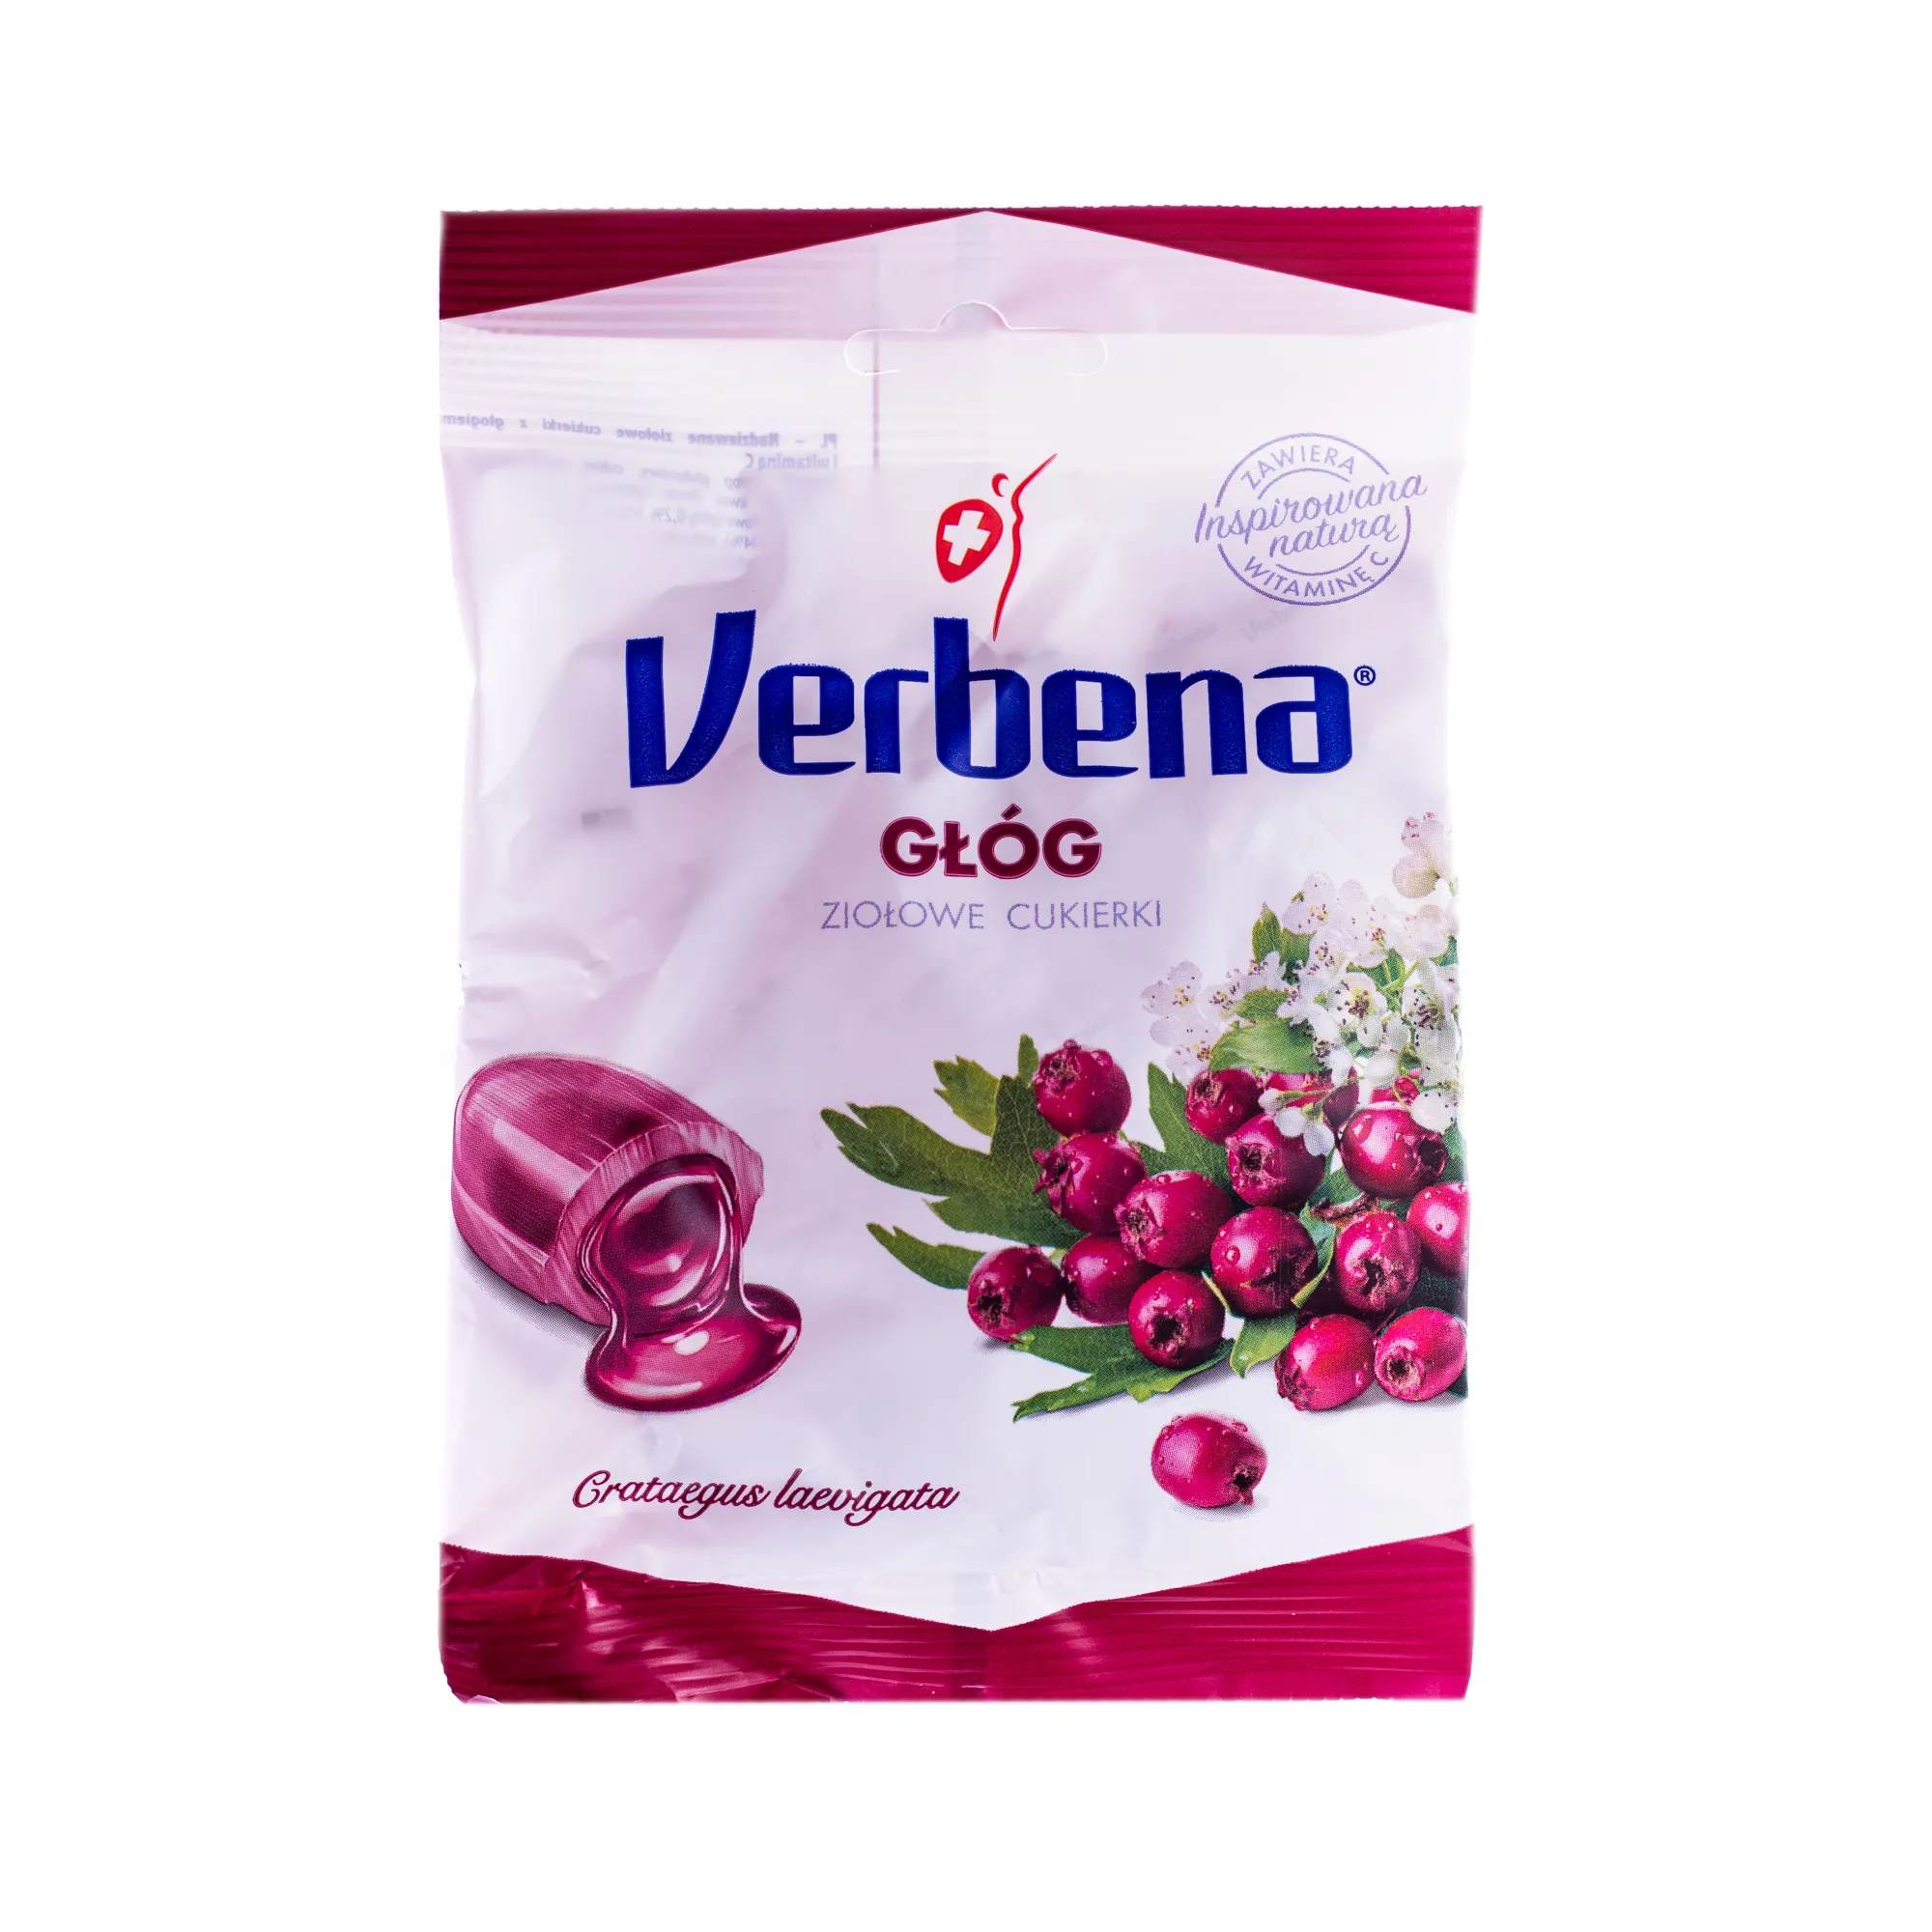 Verbena, cukierki ziołowe z głogiem i witaminą C, 60g